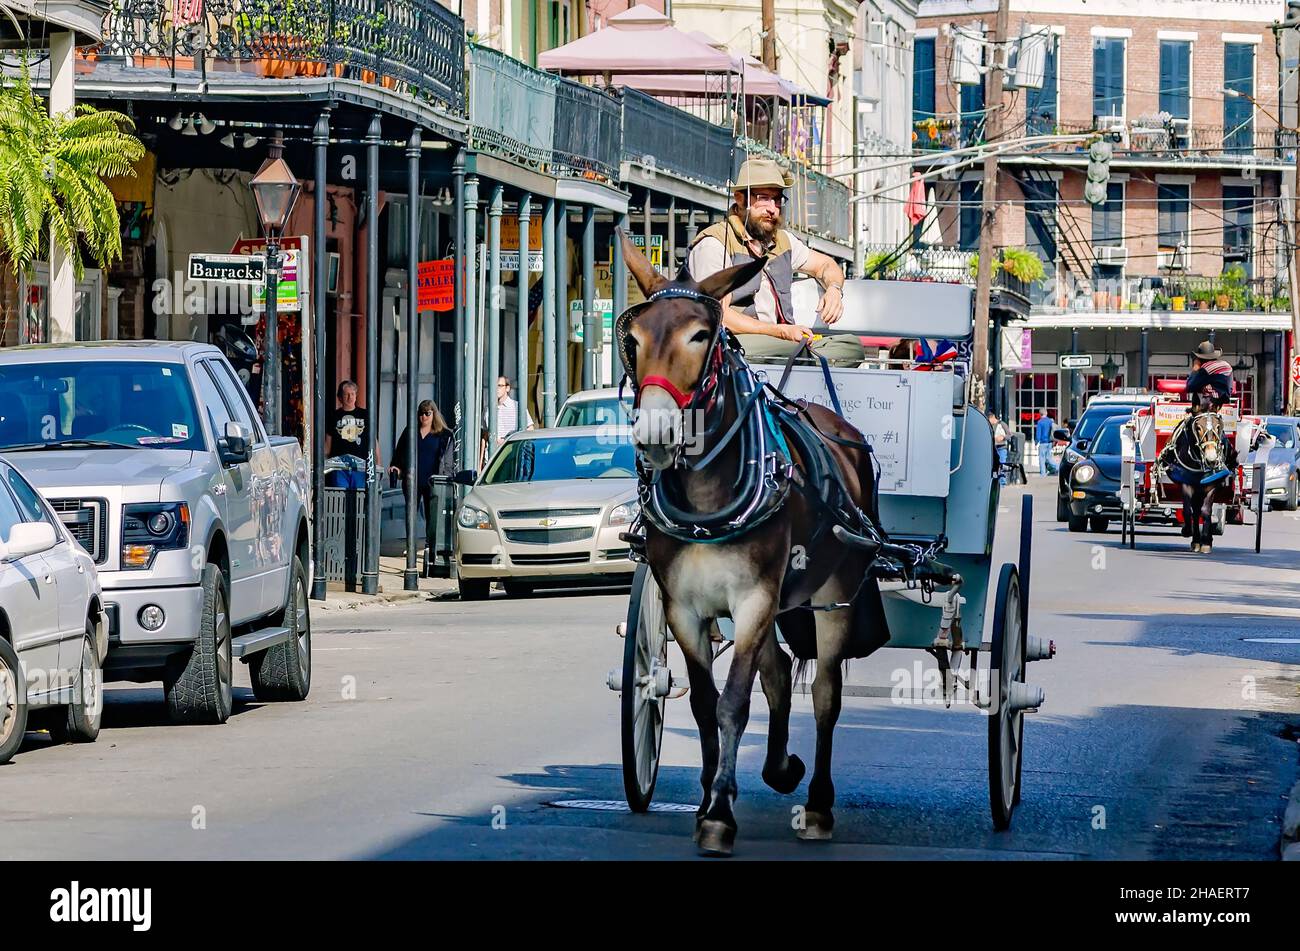 Pferdekutschen fahren am 15. November 2015 in New Orleans, Louisiana, die Decatur Street im French Quarter entlang. Stockfoto